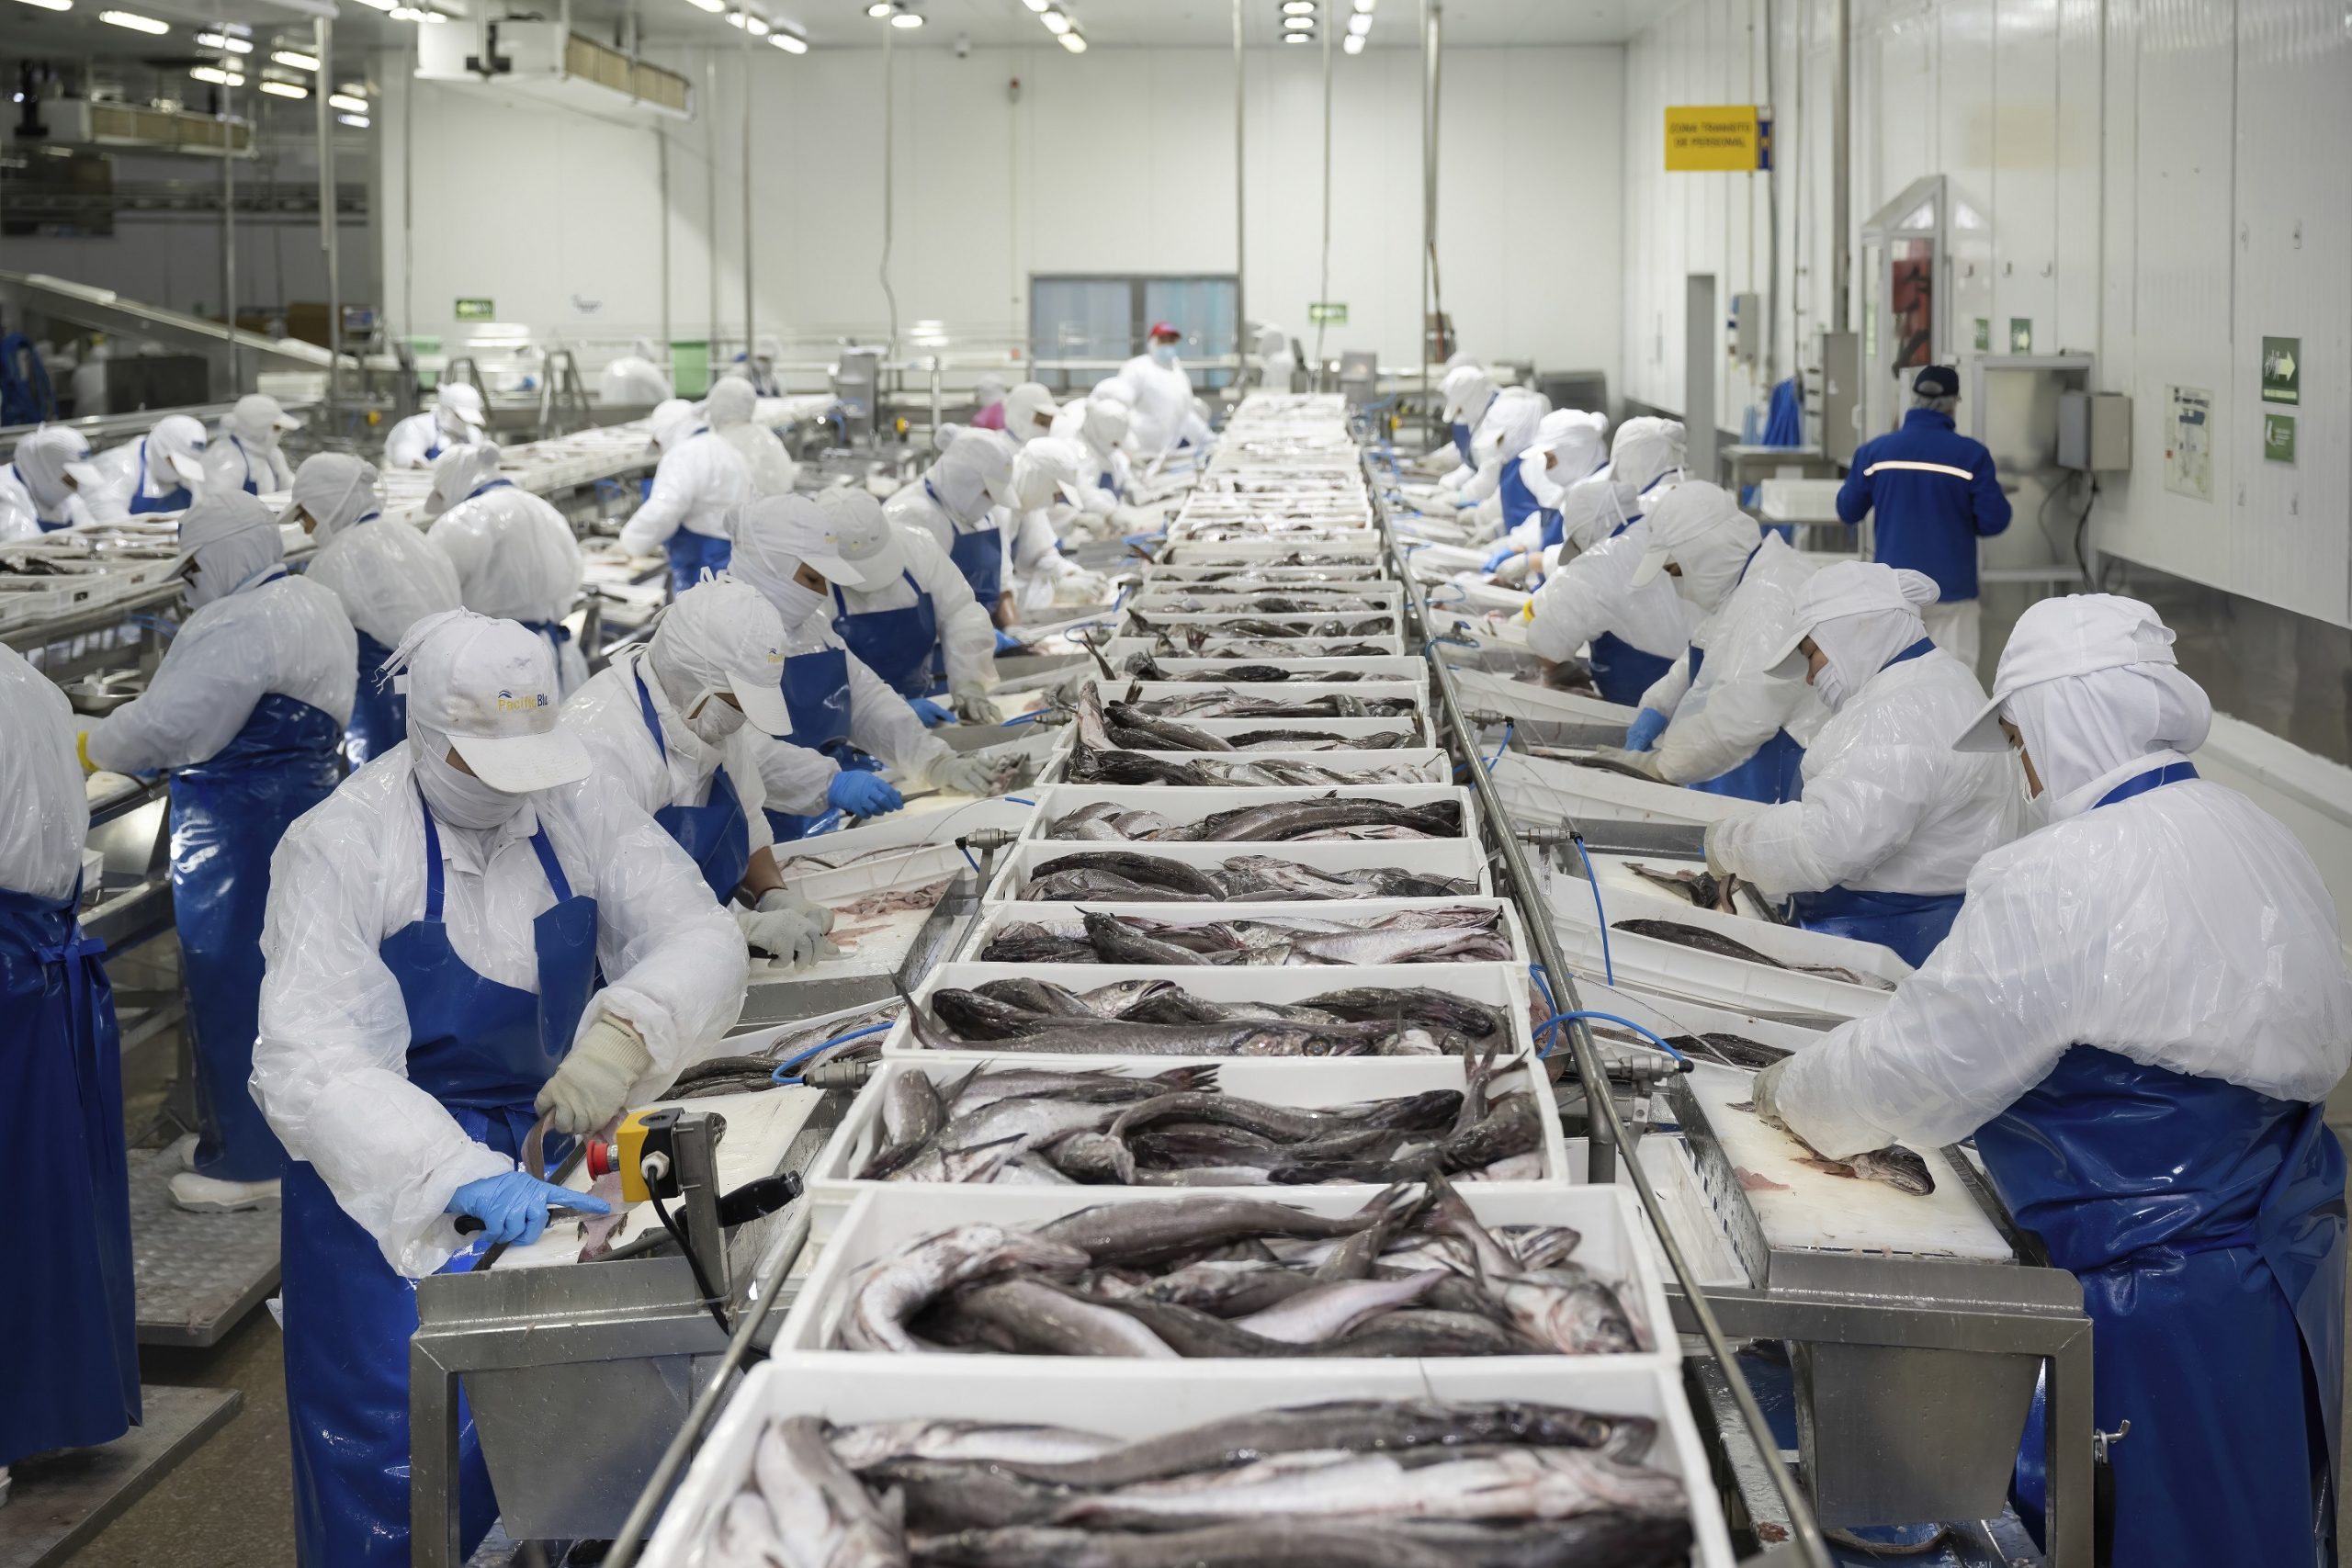 Ámbito laboral: Pesca industrial busca reforzar iniciativas de empleo y capacitación